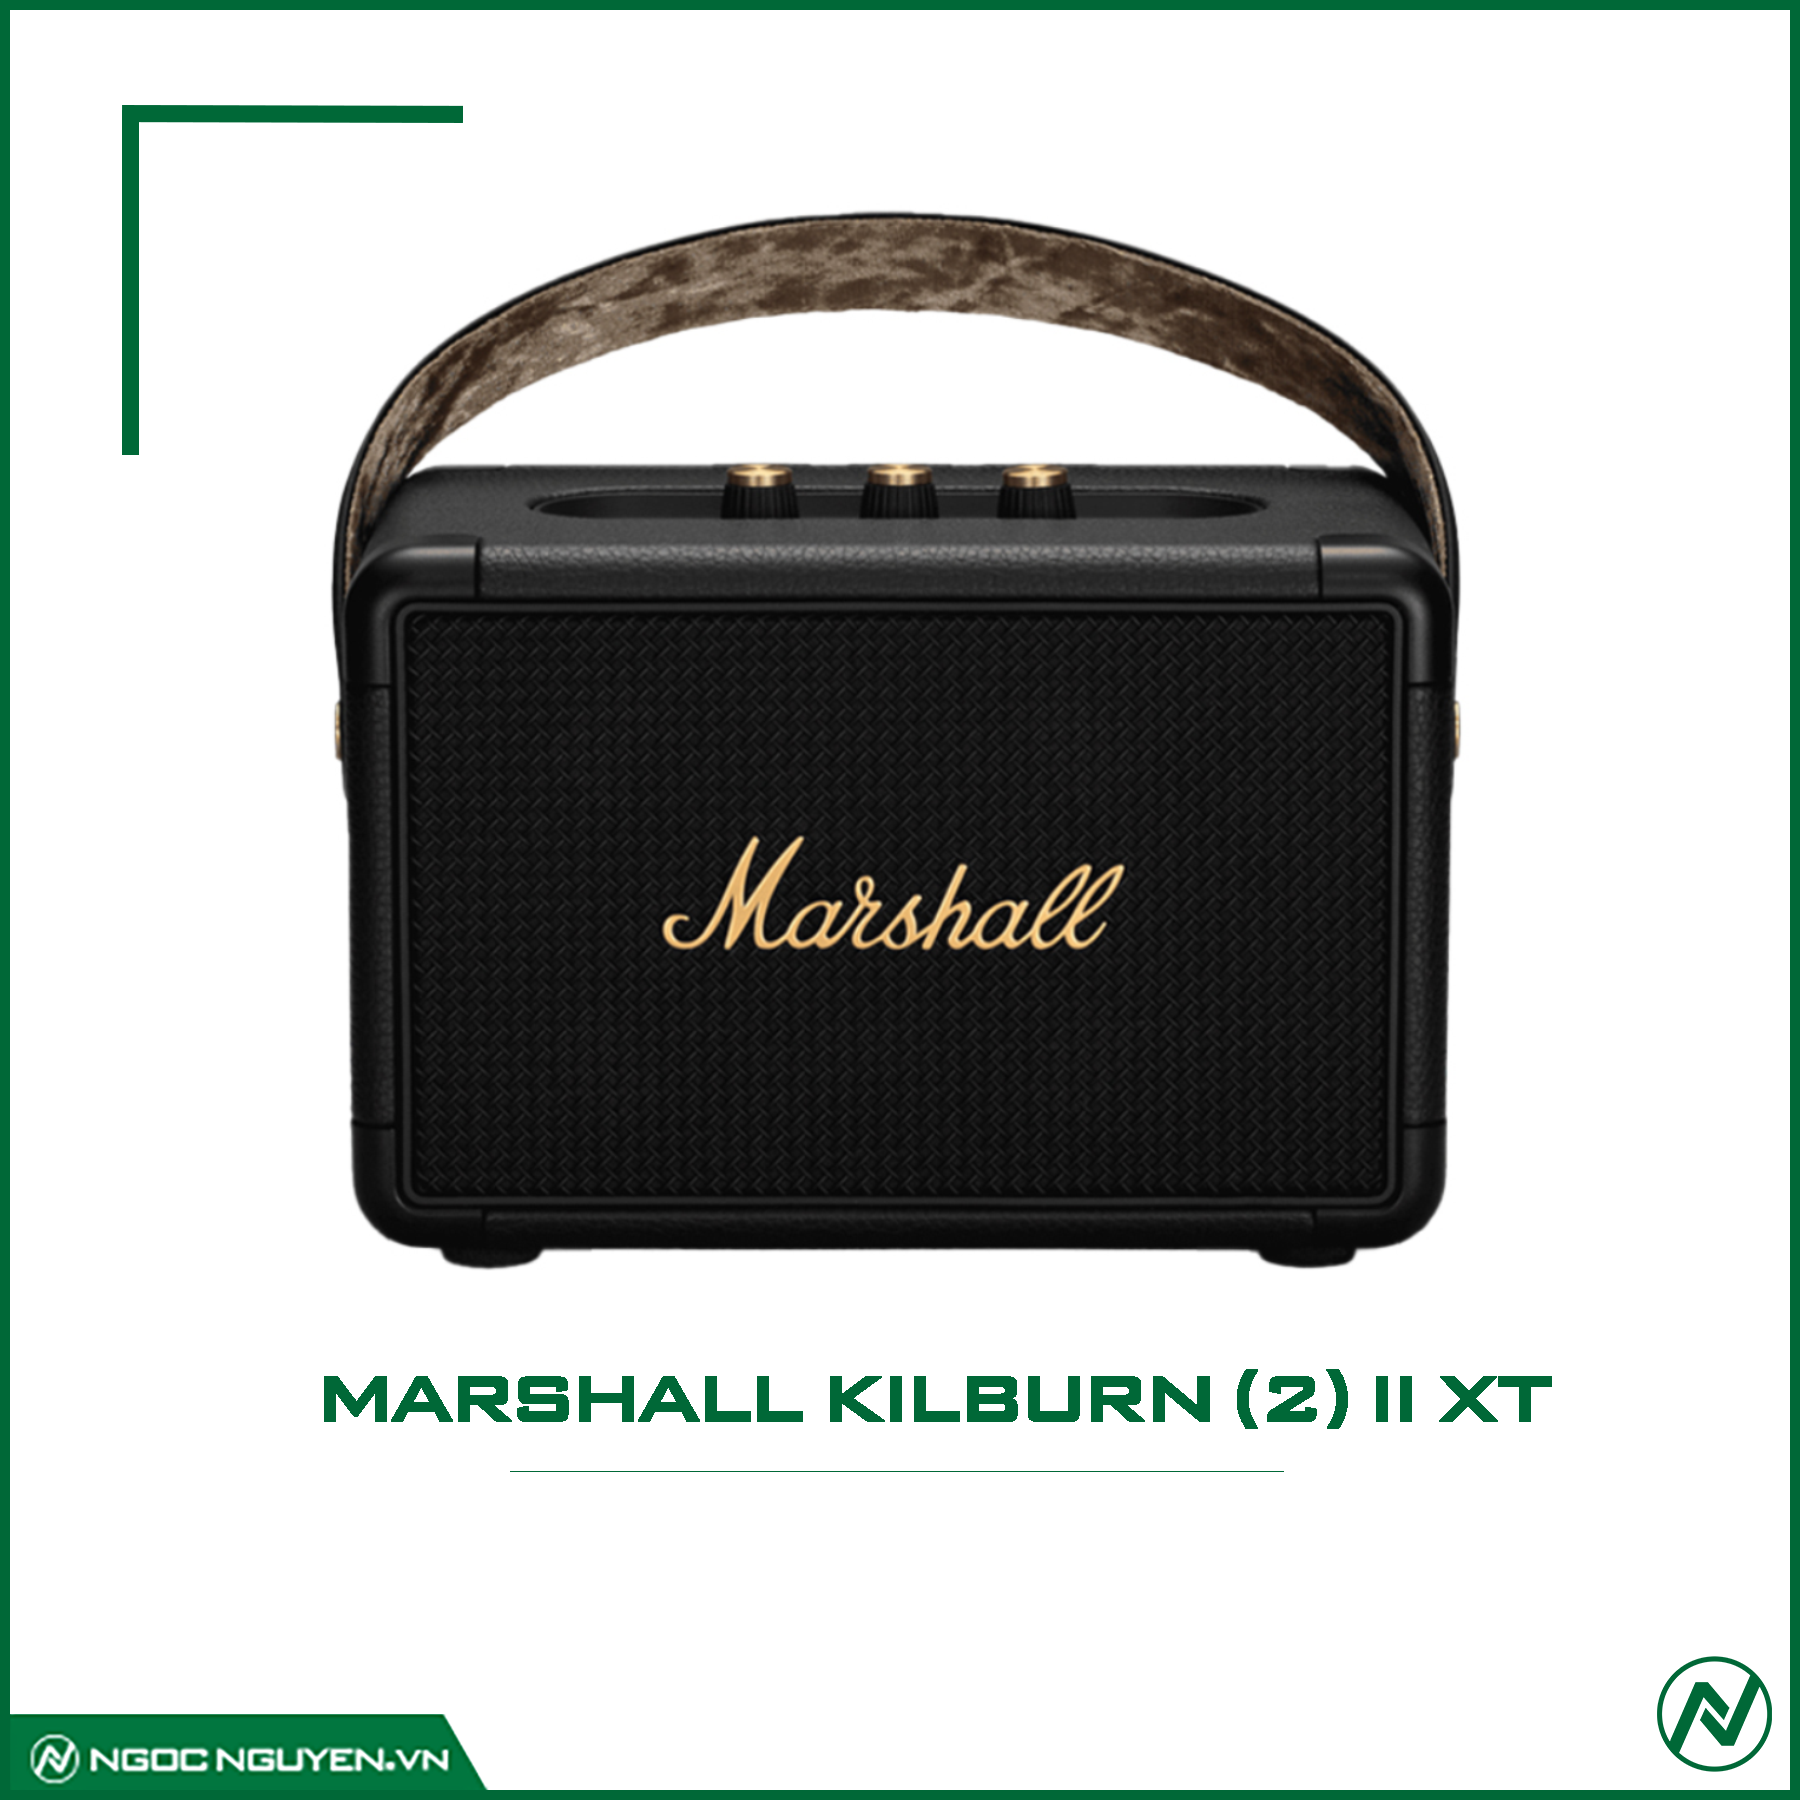 Loa Marshall KilBurn (2) II XT